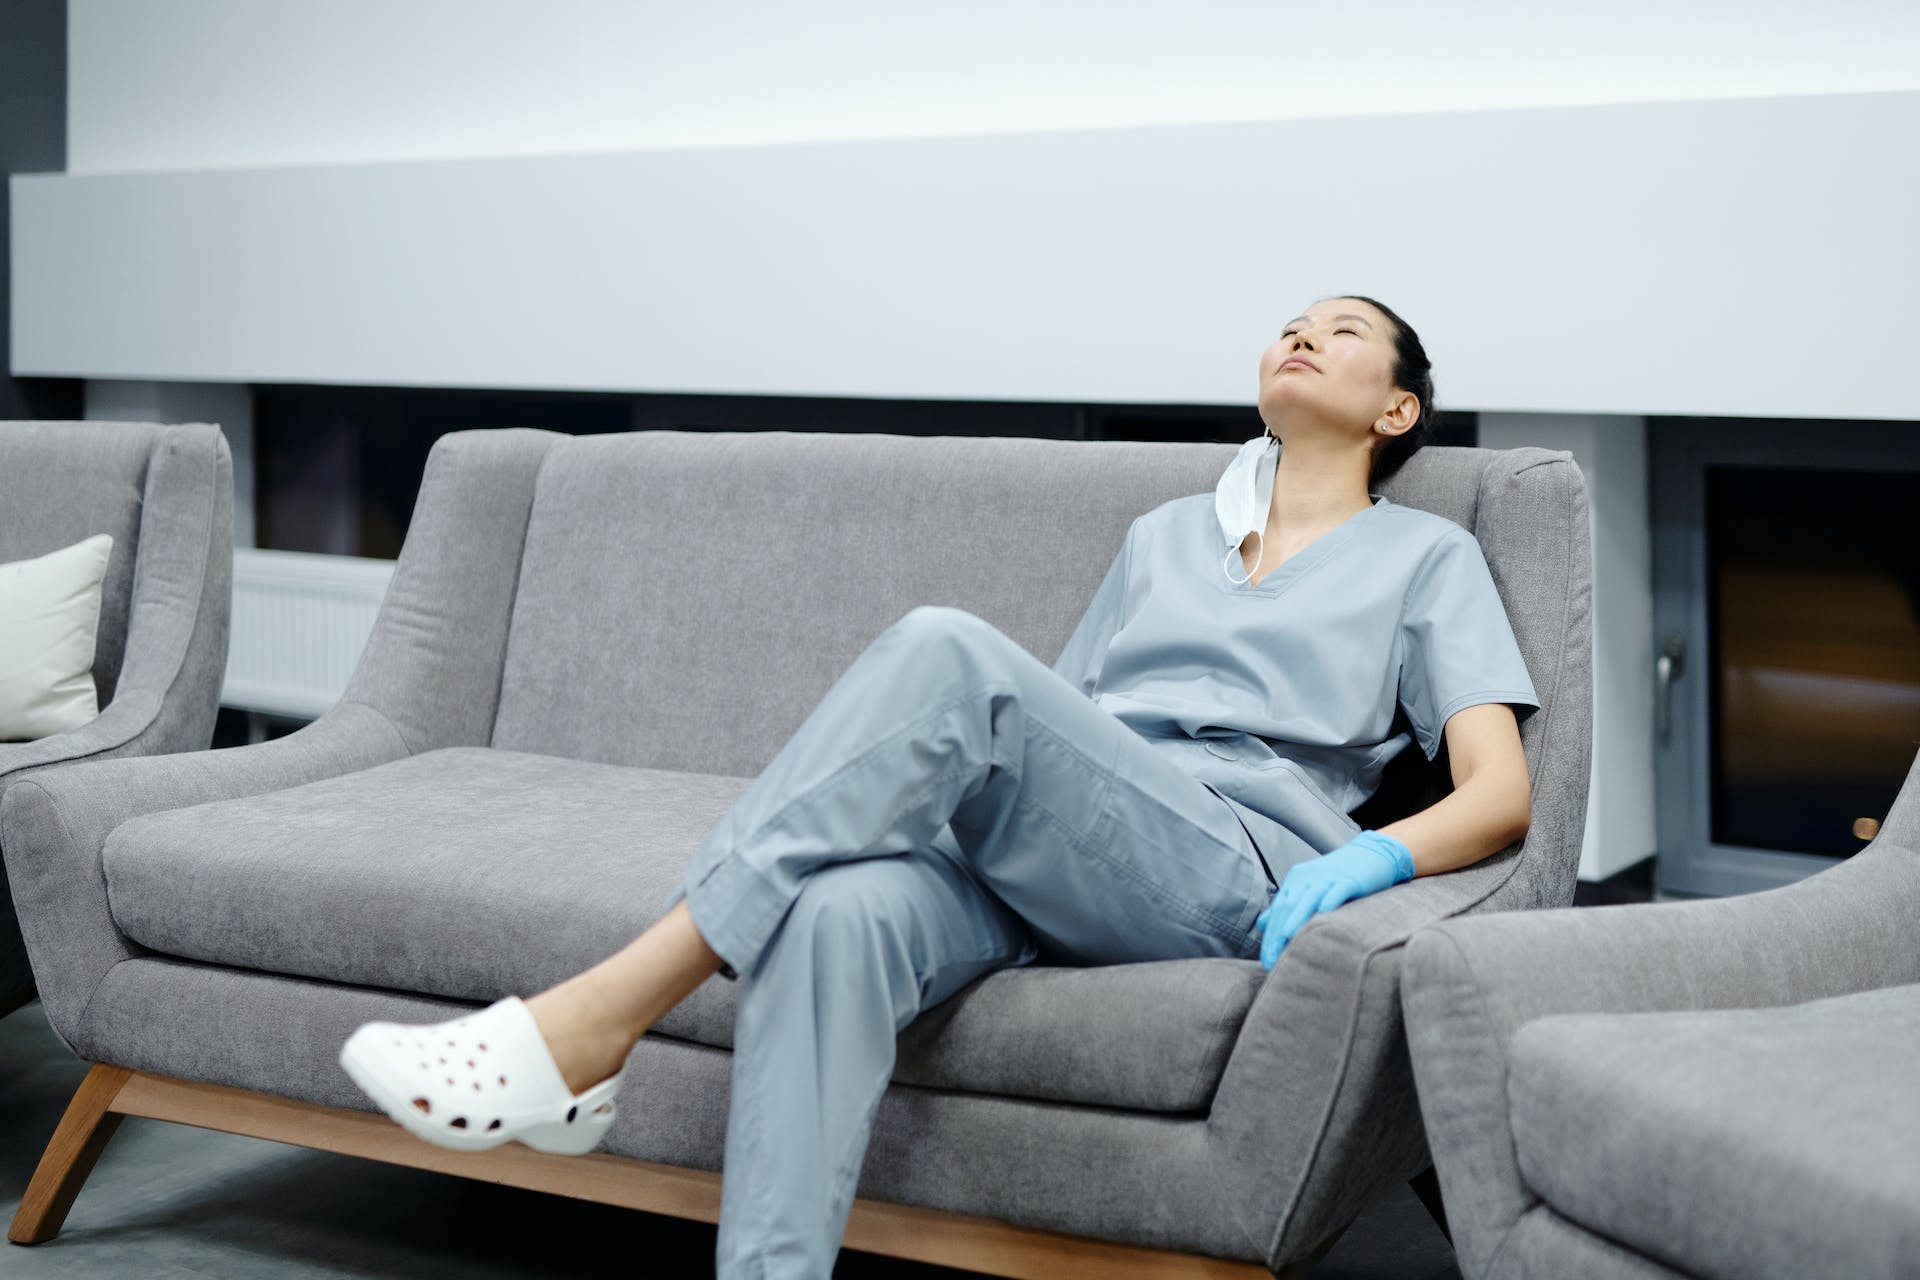 Infirmière se reposant sur un canapé | Source : Pexels